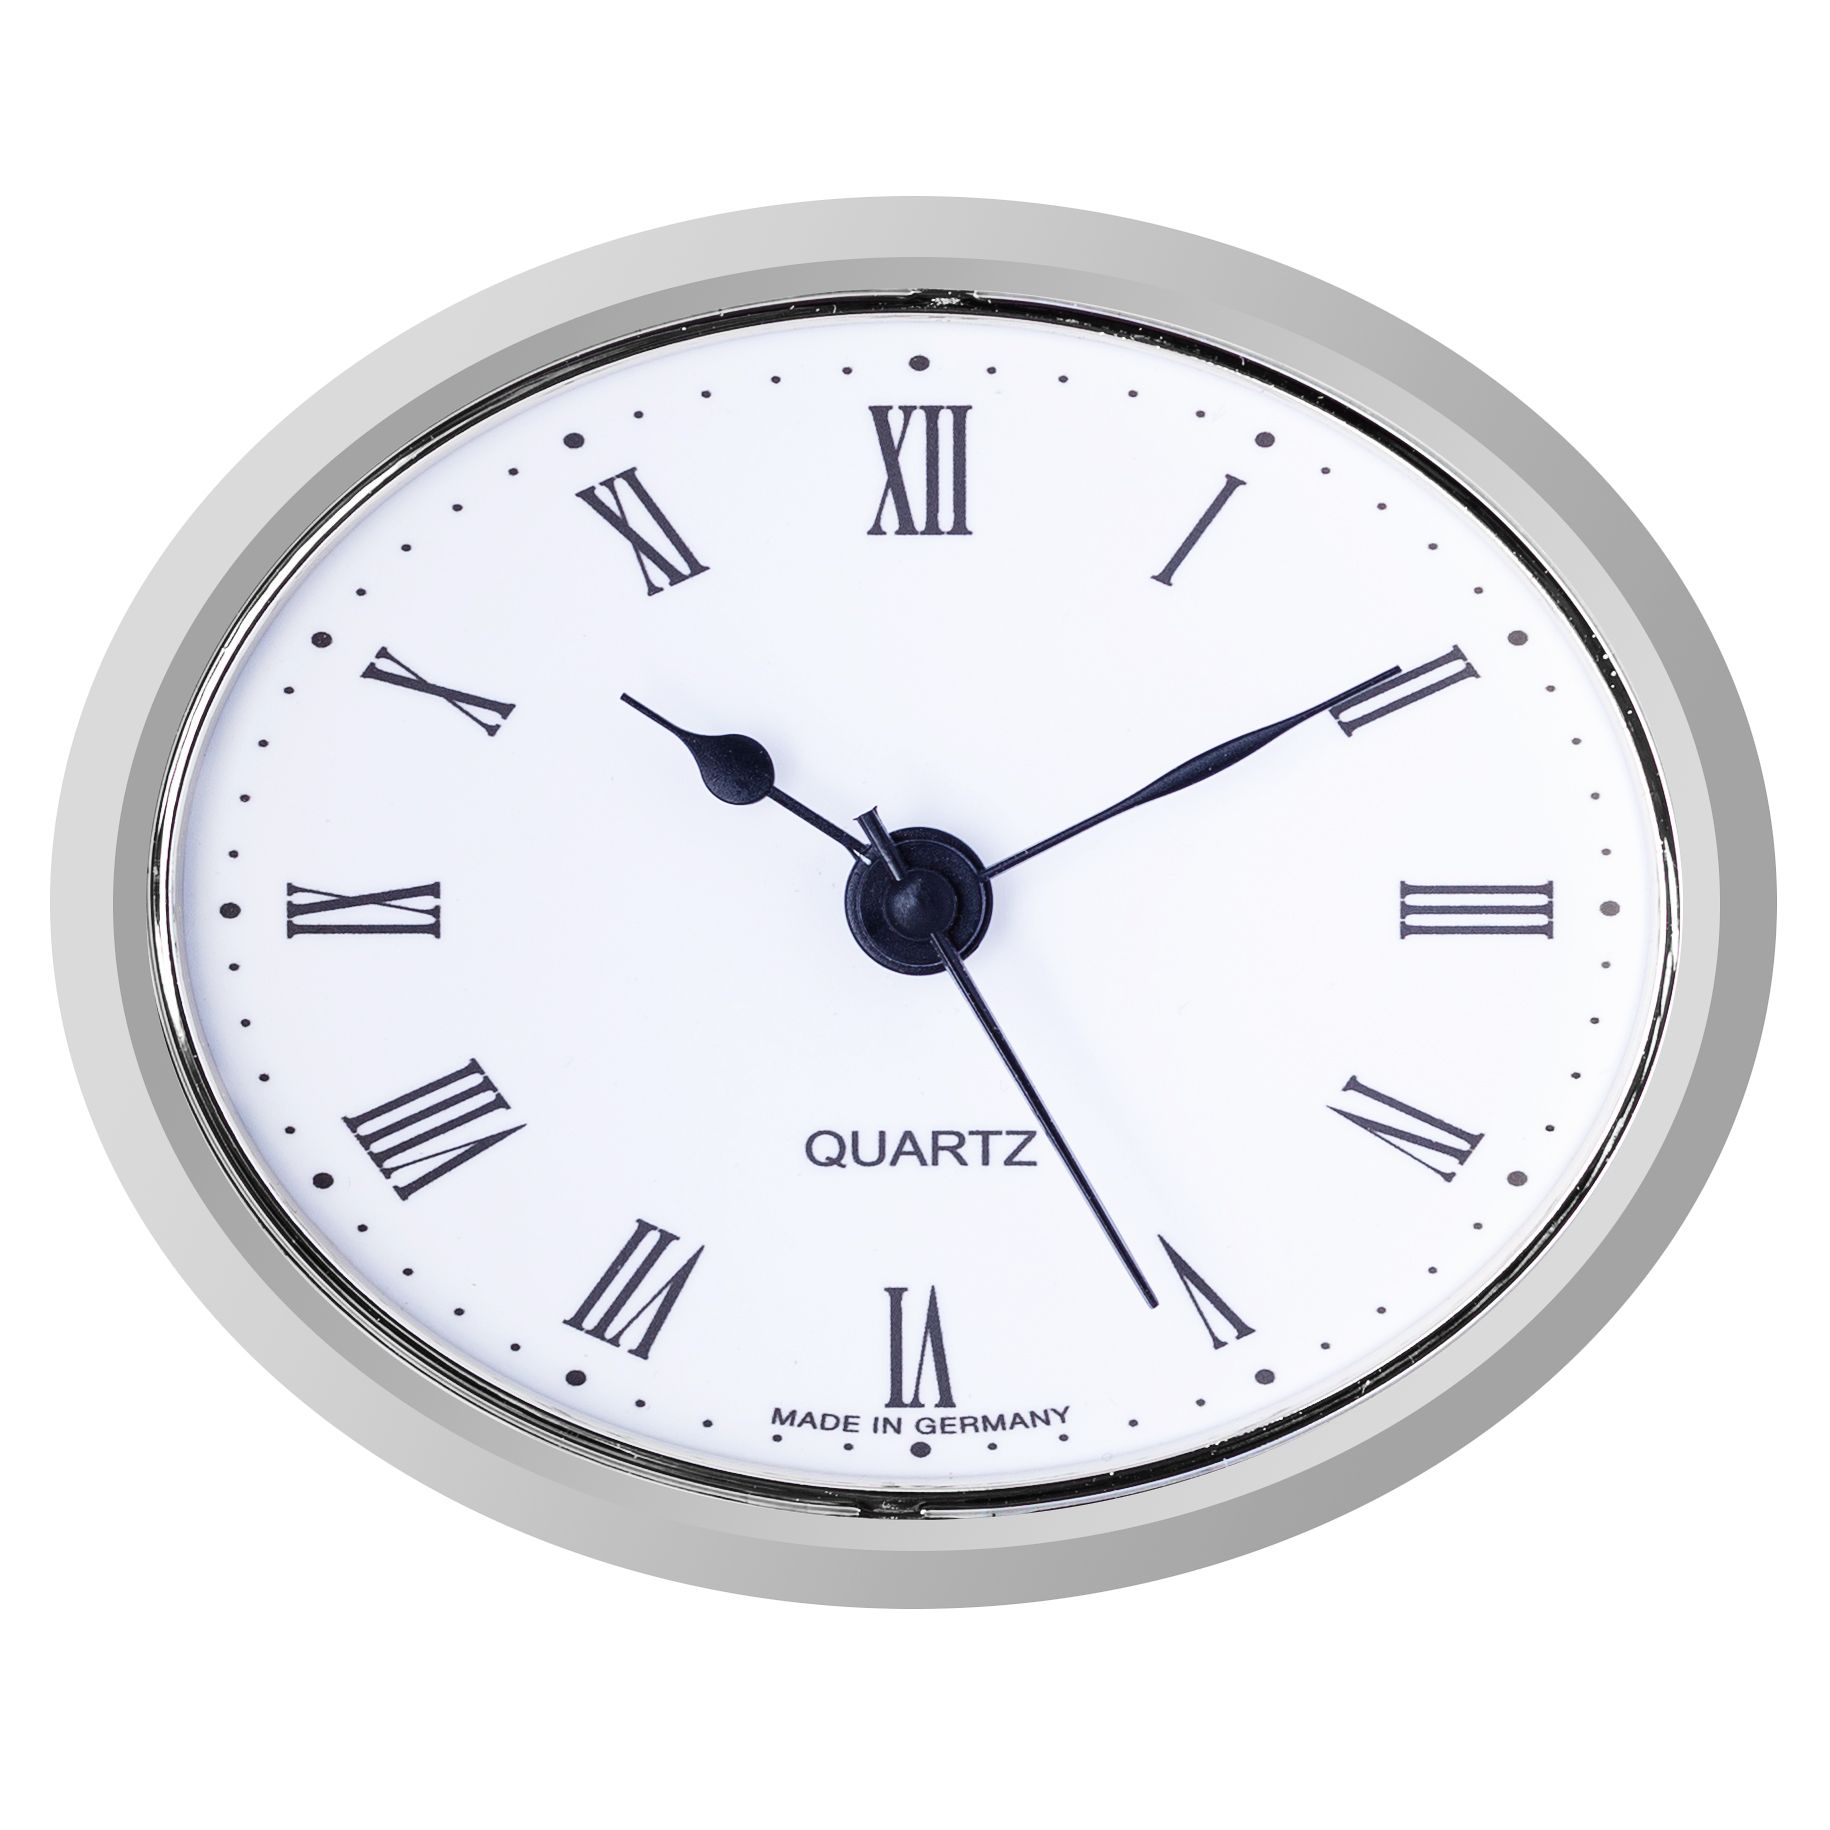 Встраиваемый часовой механизм UTS. Встраиваемый часовой механизм UTS 550417901. Часовая капсула 80 мм. Встраиваемый кварцевый часовой механизм UTS 550417901. Купить встраиваемые часы